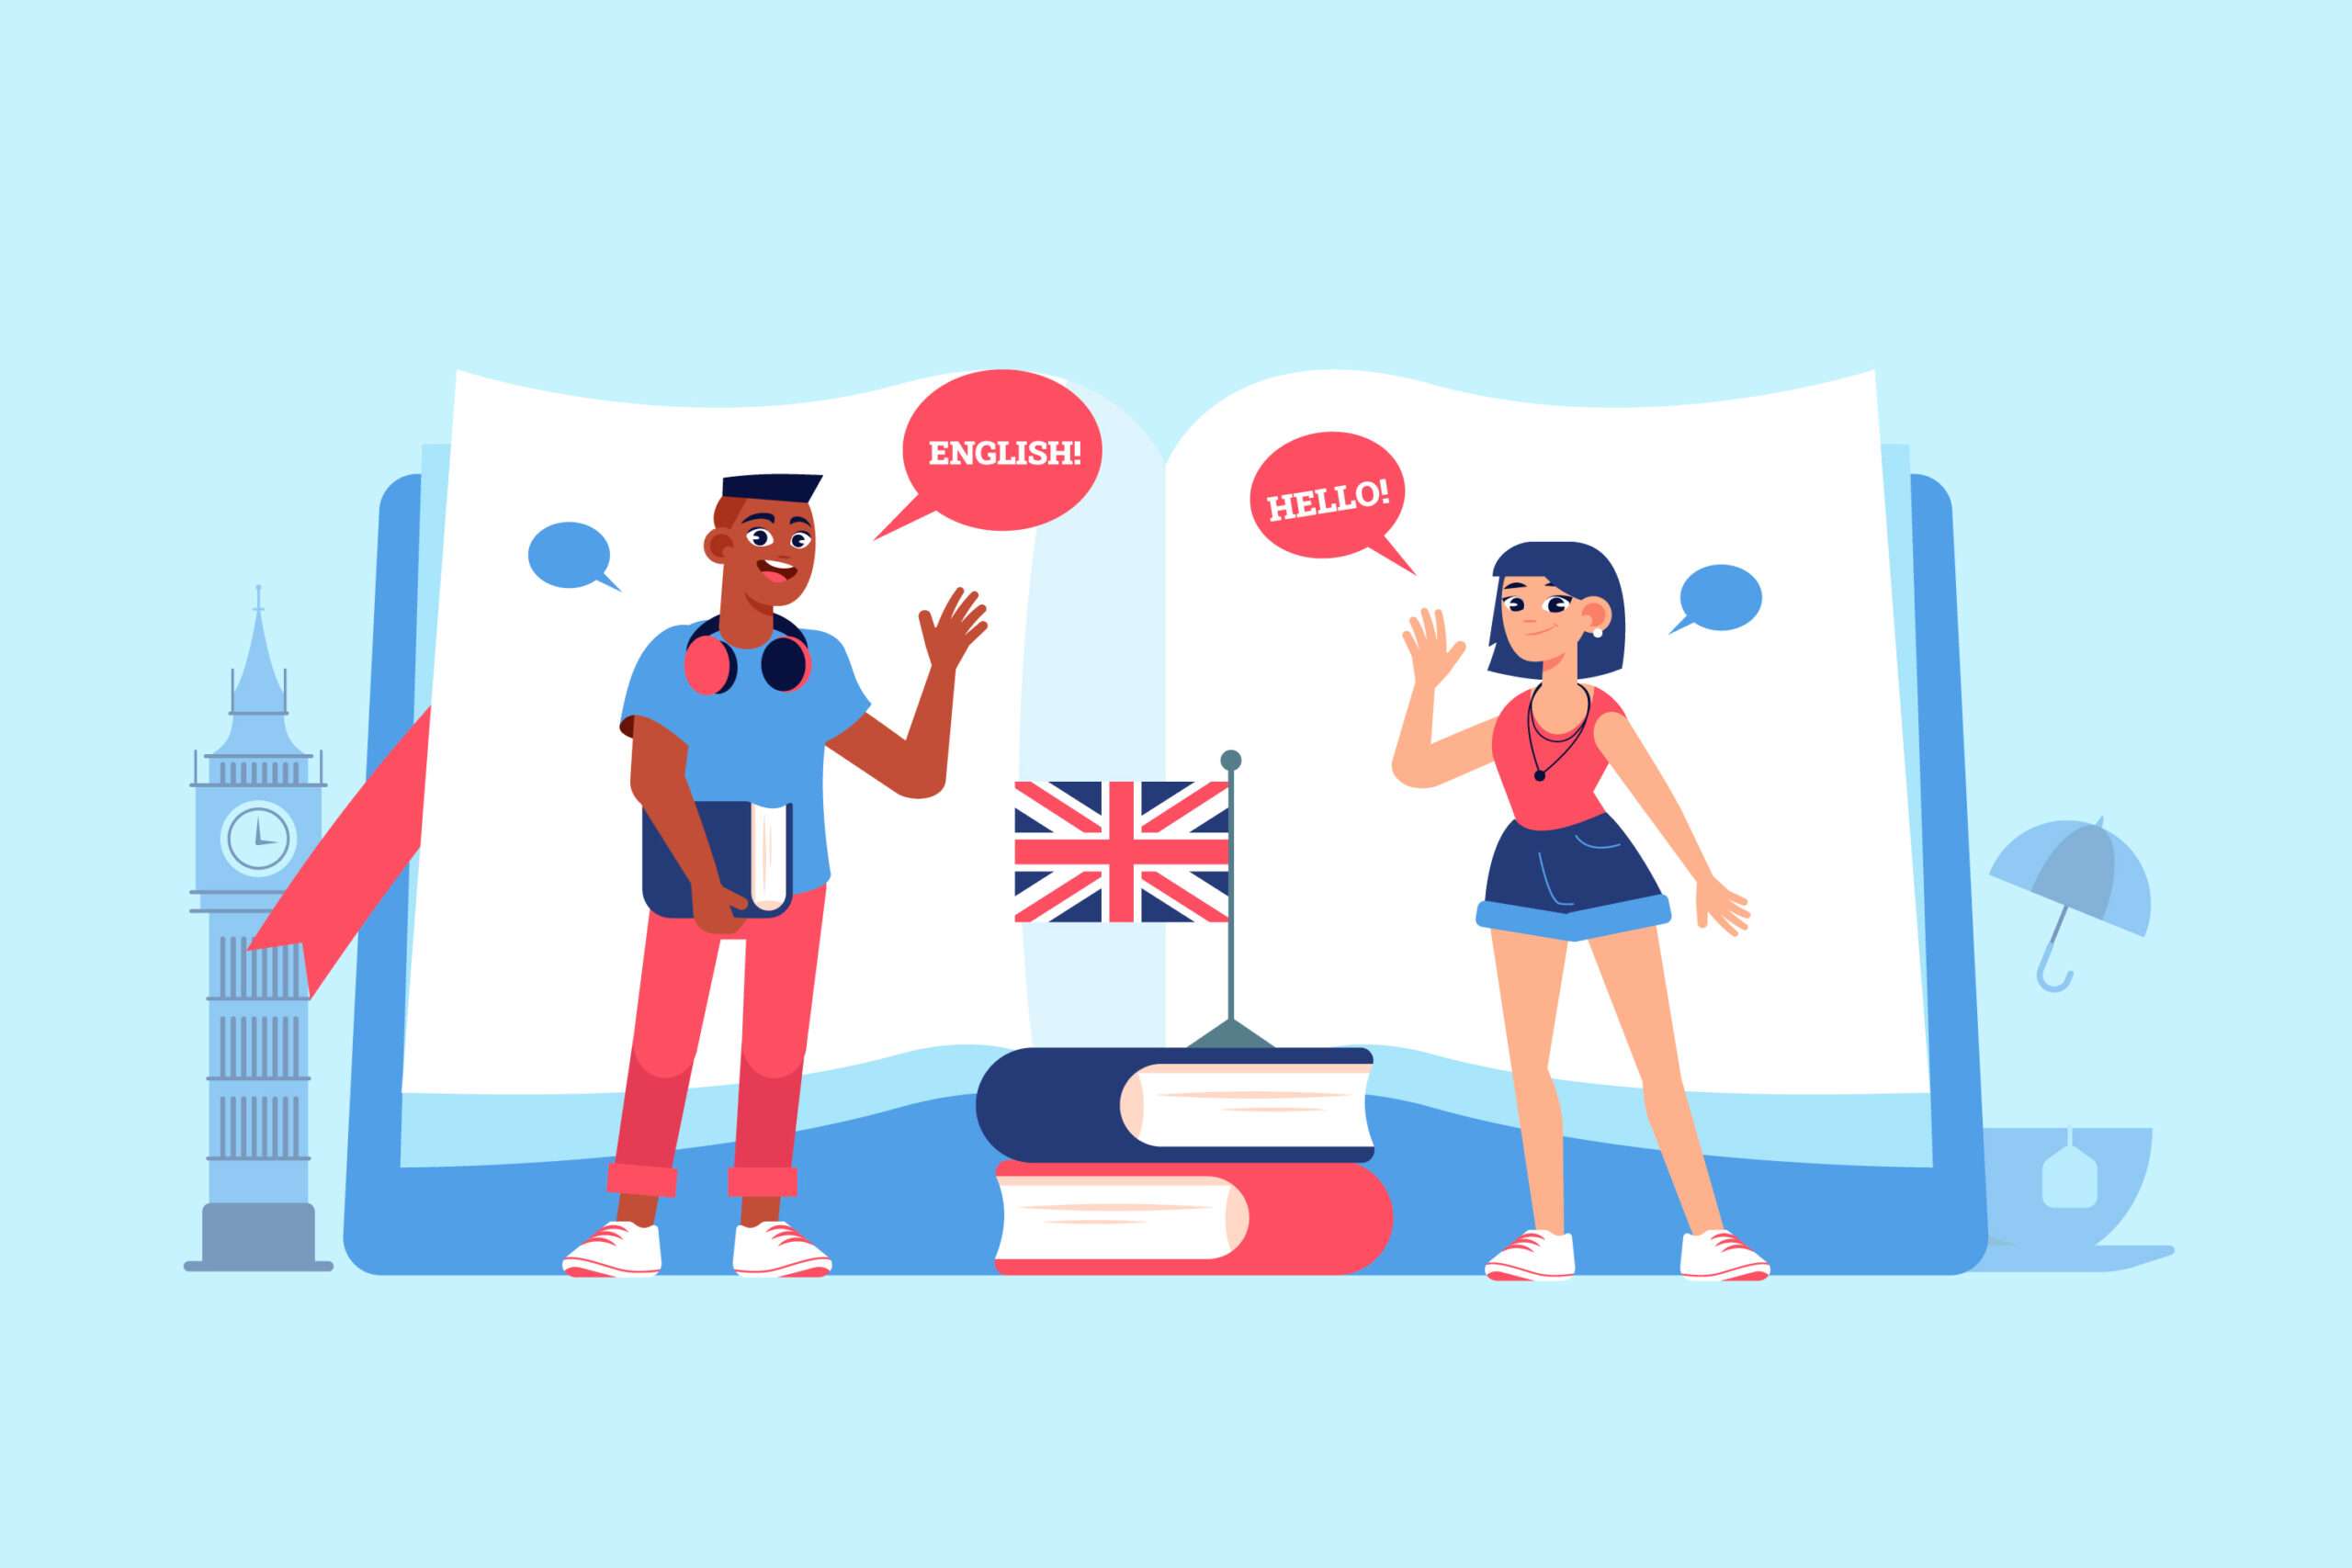 کلاس زبان آنلاین بهتر است یا حضوری؟